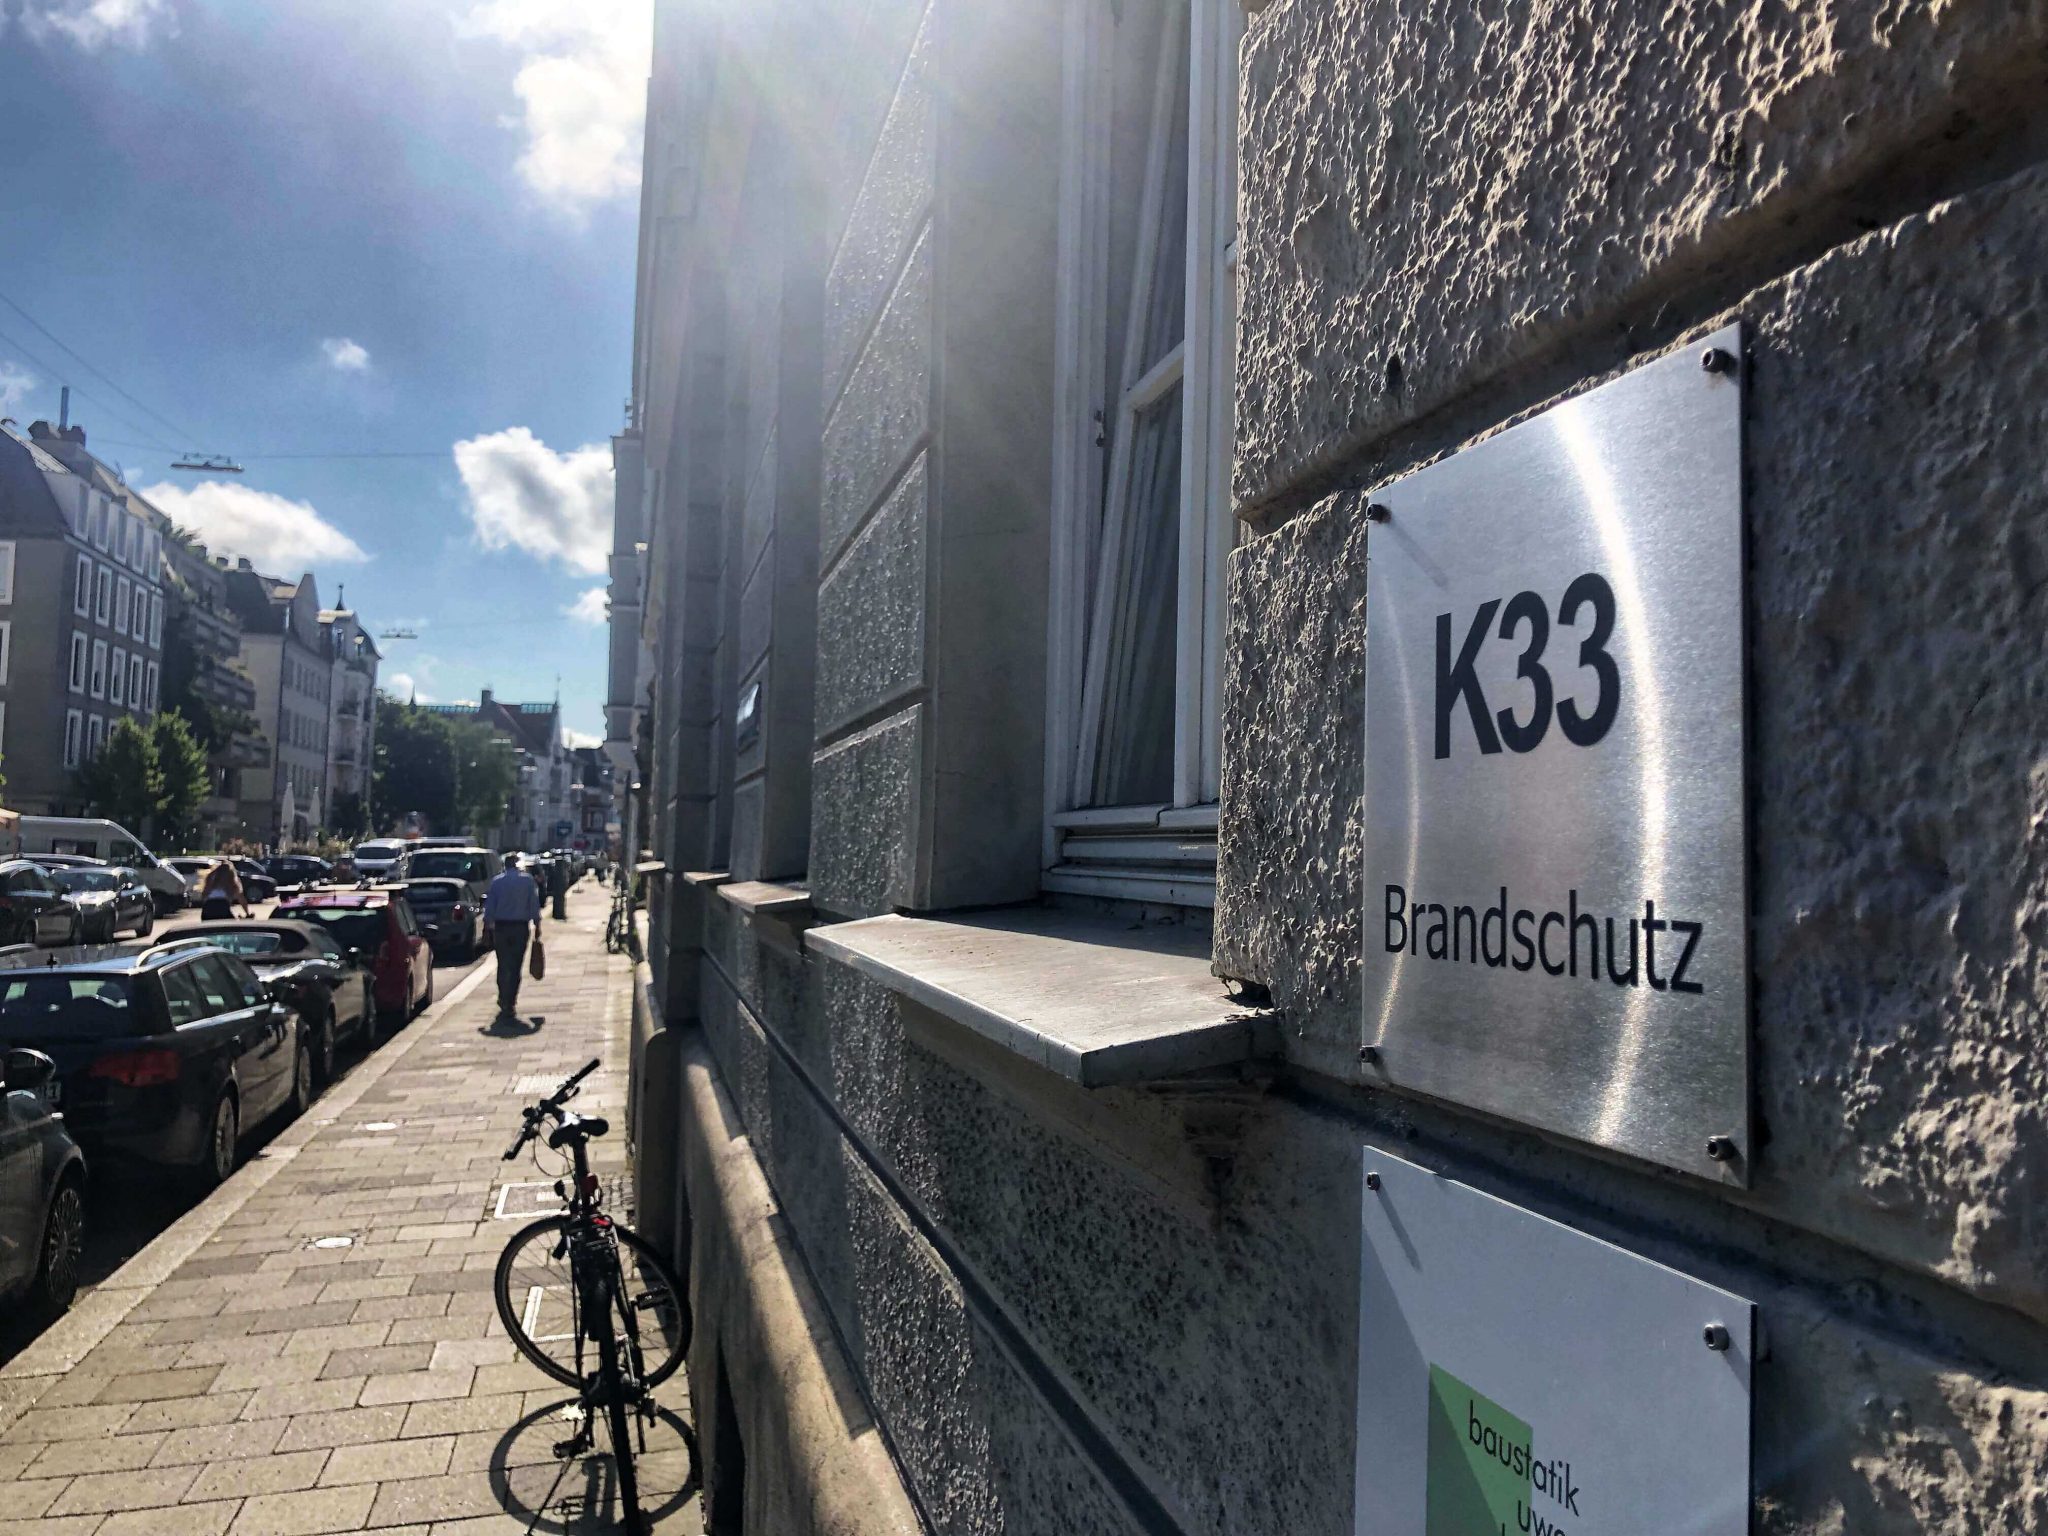 Türschild des Büros K33 Brandschutz in der Kaiserstraßein München